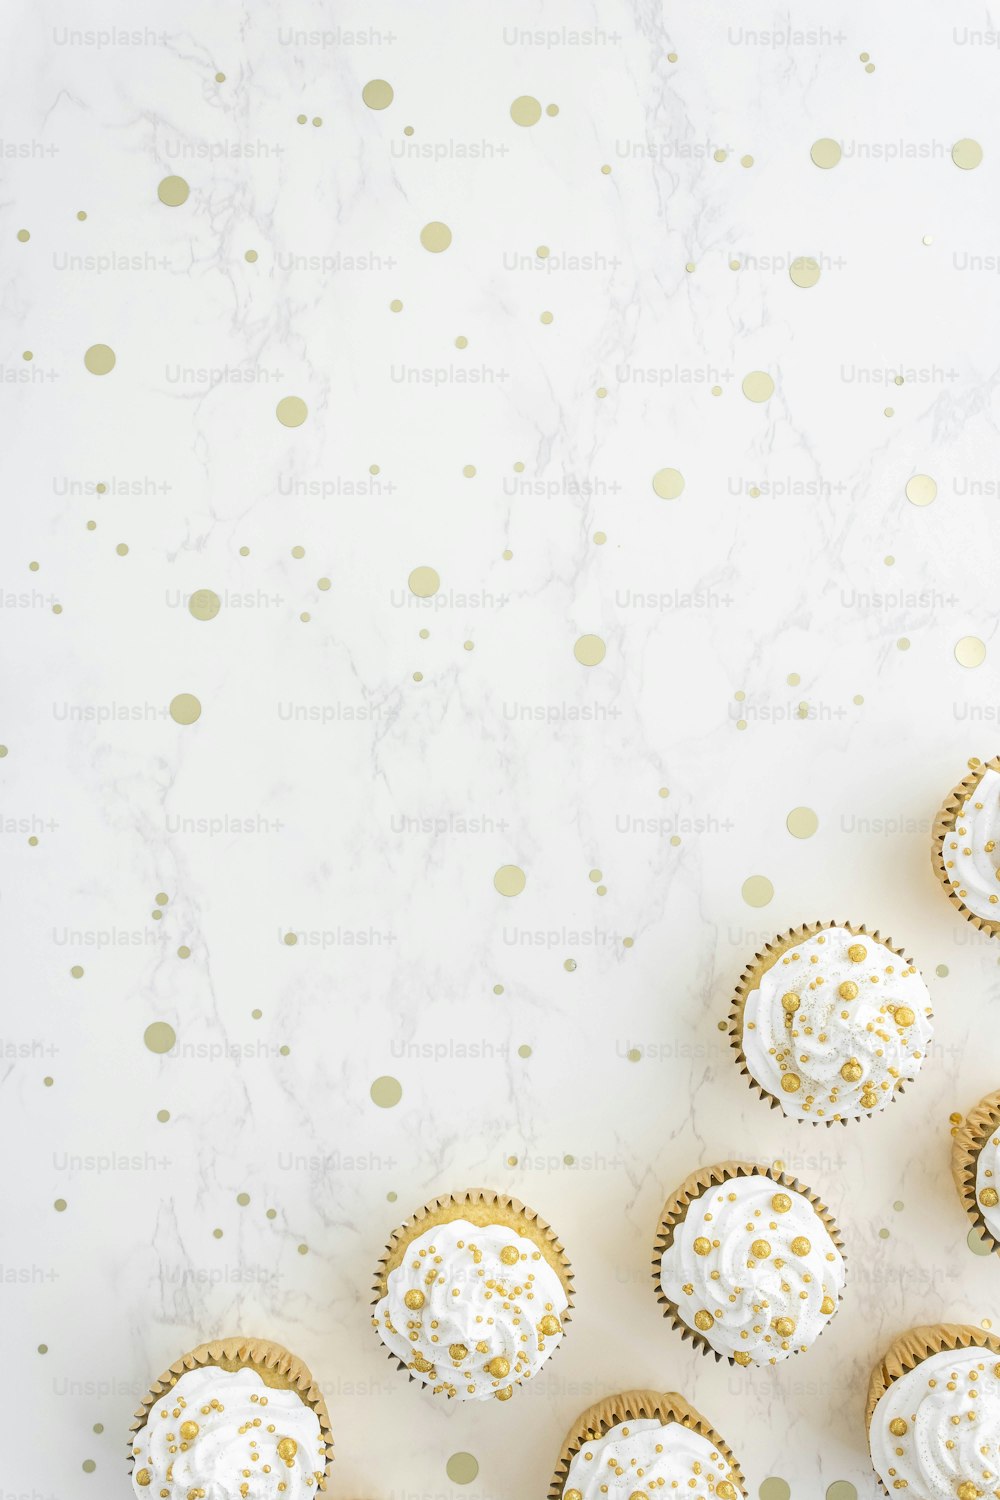 cupcakes con glaseado blanco y espolvoreados de oro sobre un mármol